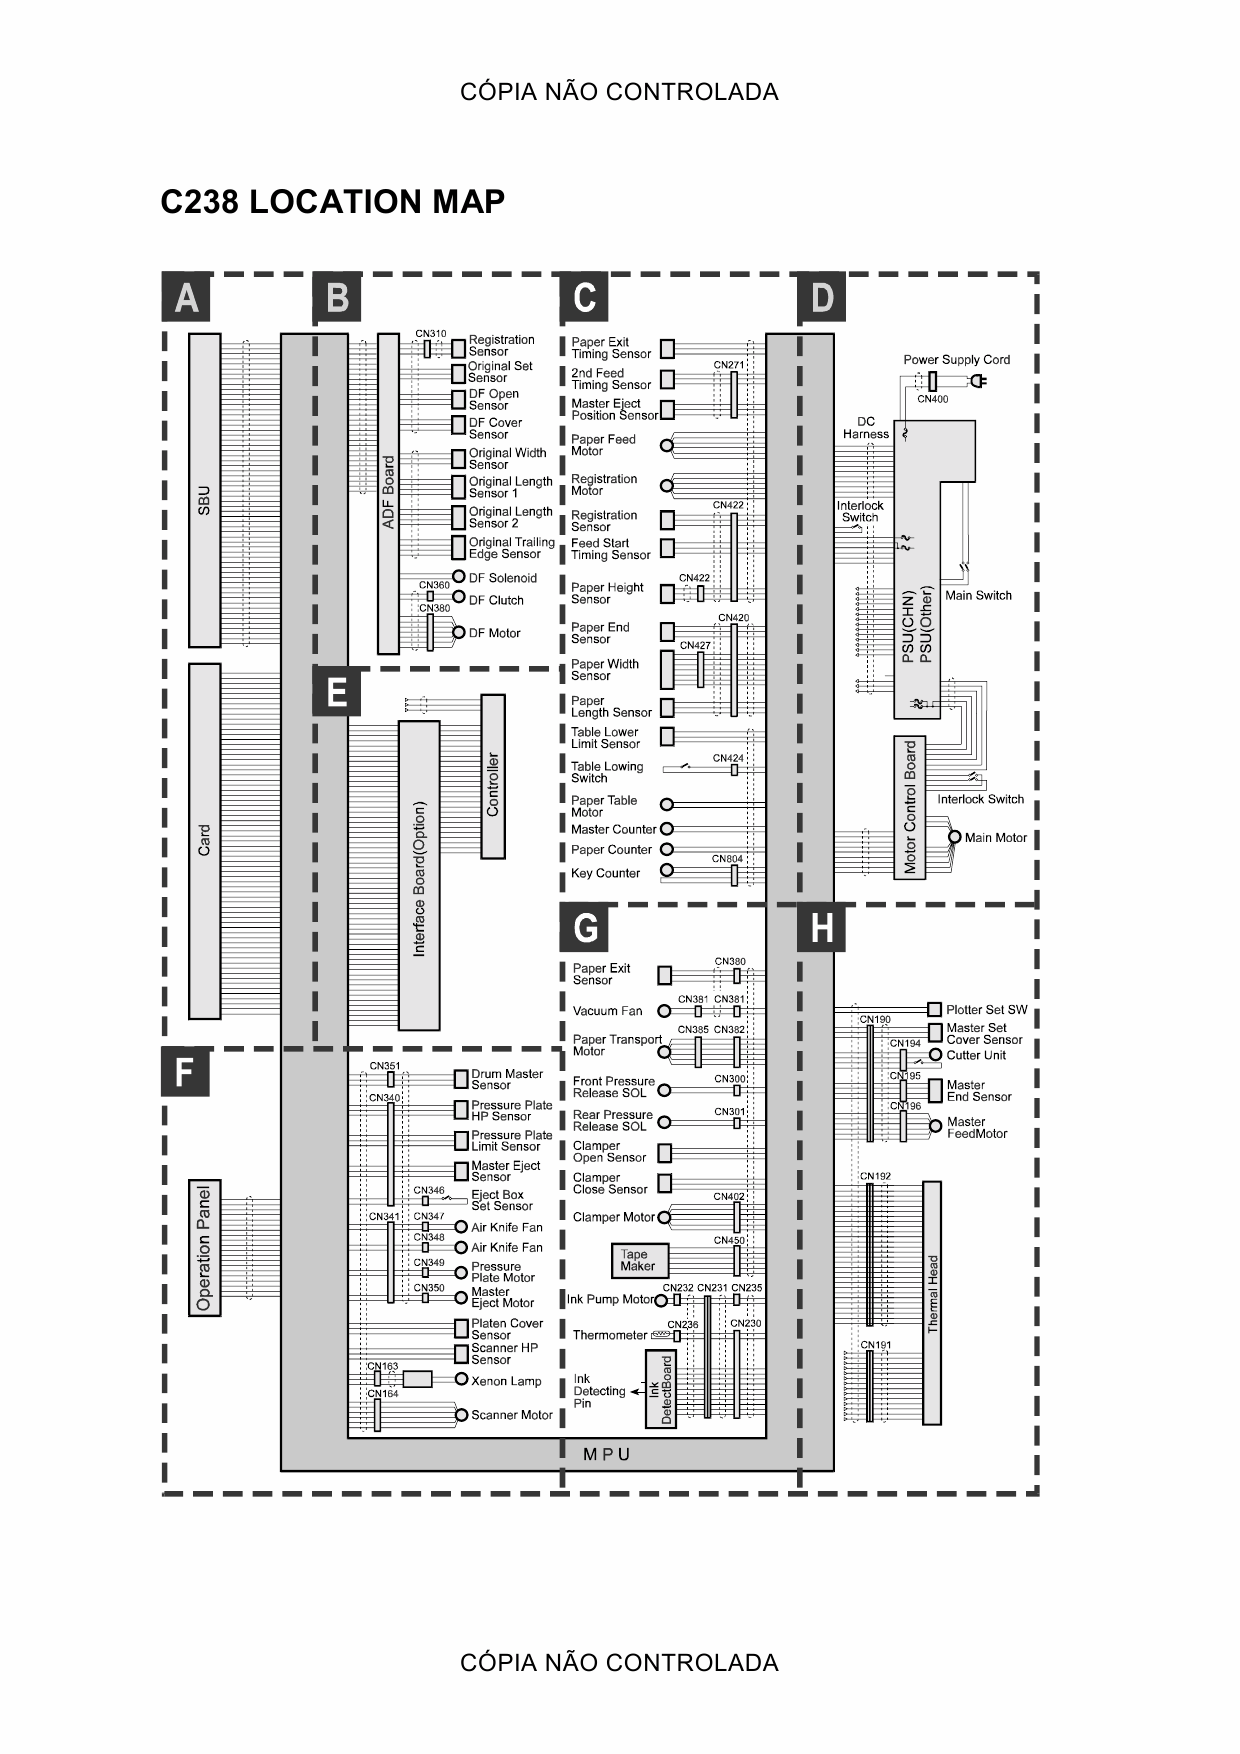 RICOH Aficio DX-3340 JP-1030 1230 3000 1235 C231 C237 C238 C248 C267 Circuit Diagram-5